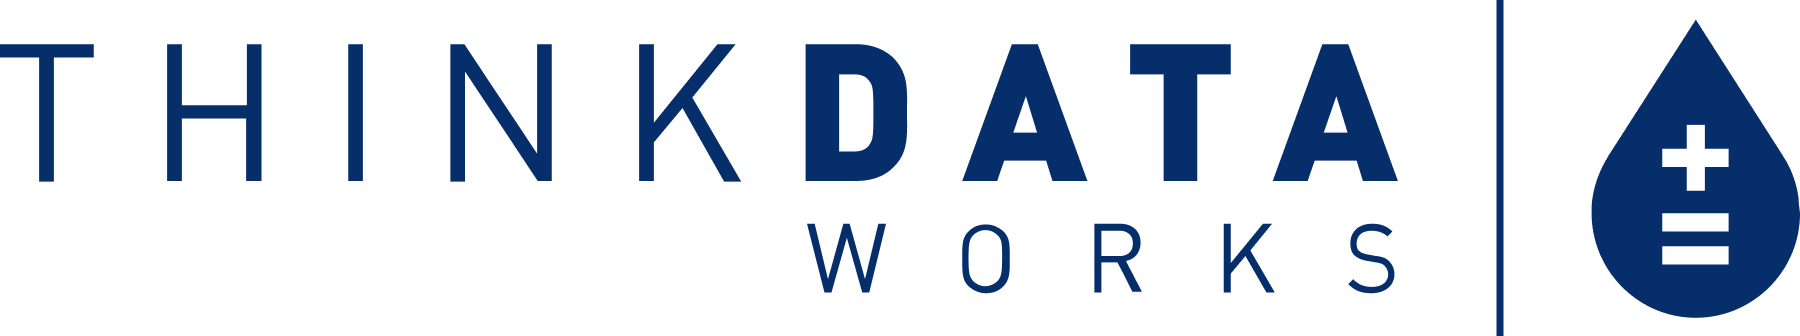 ThinkData Works logo